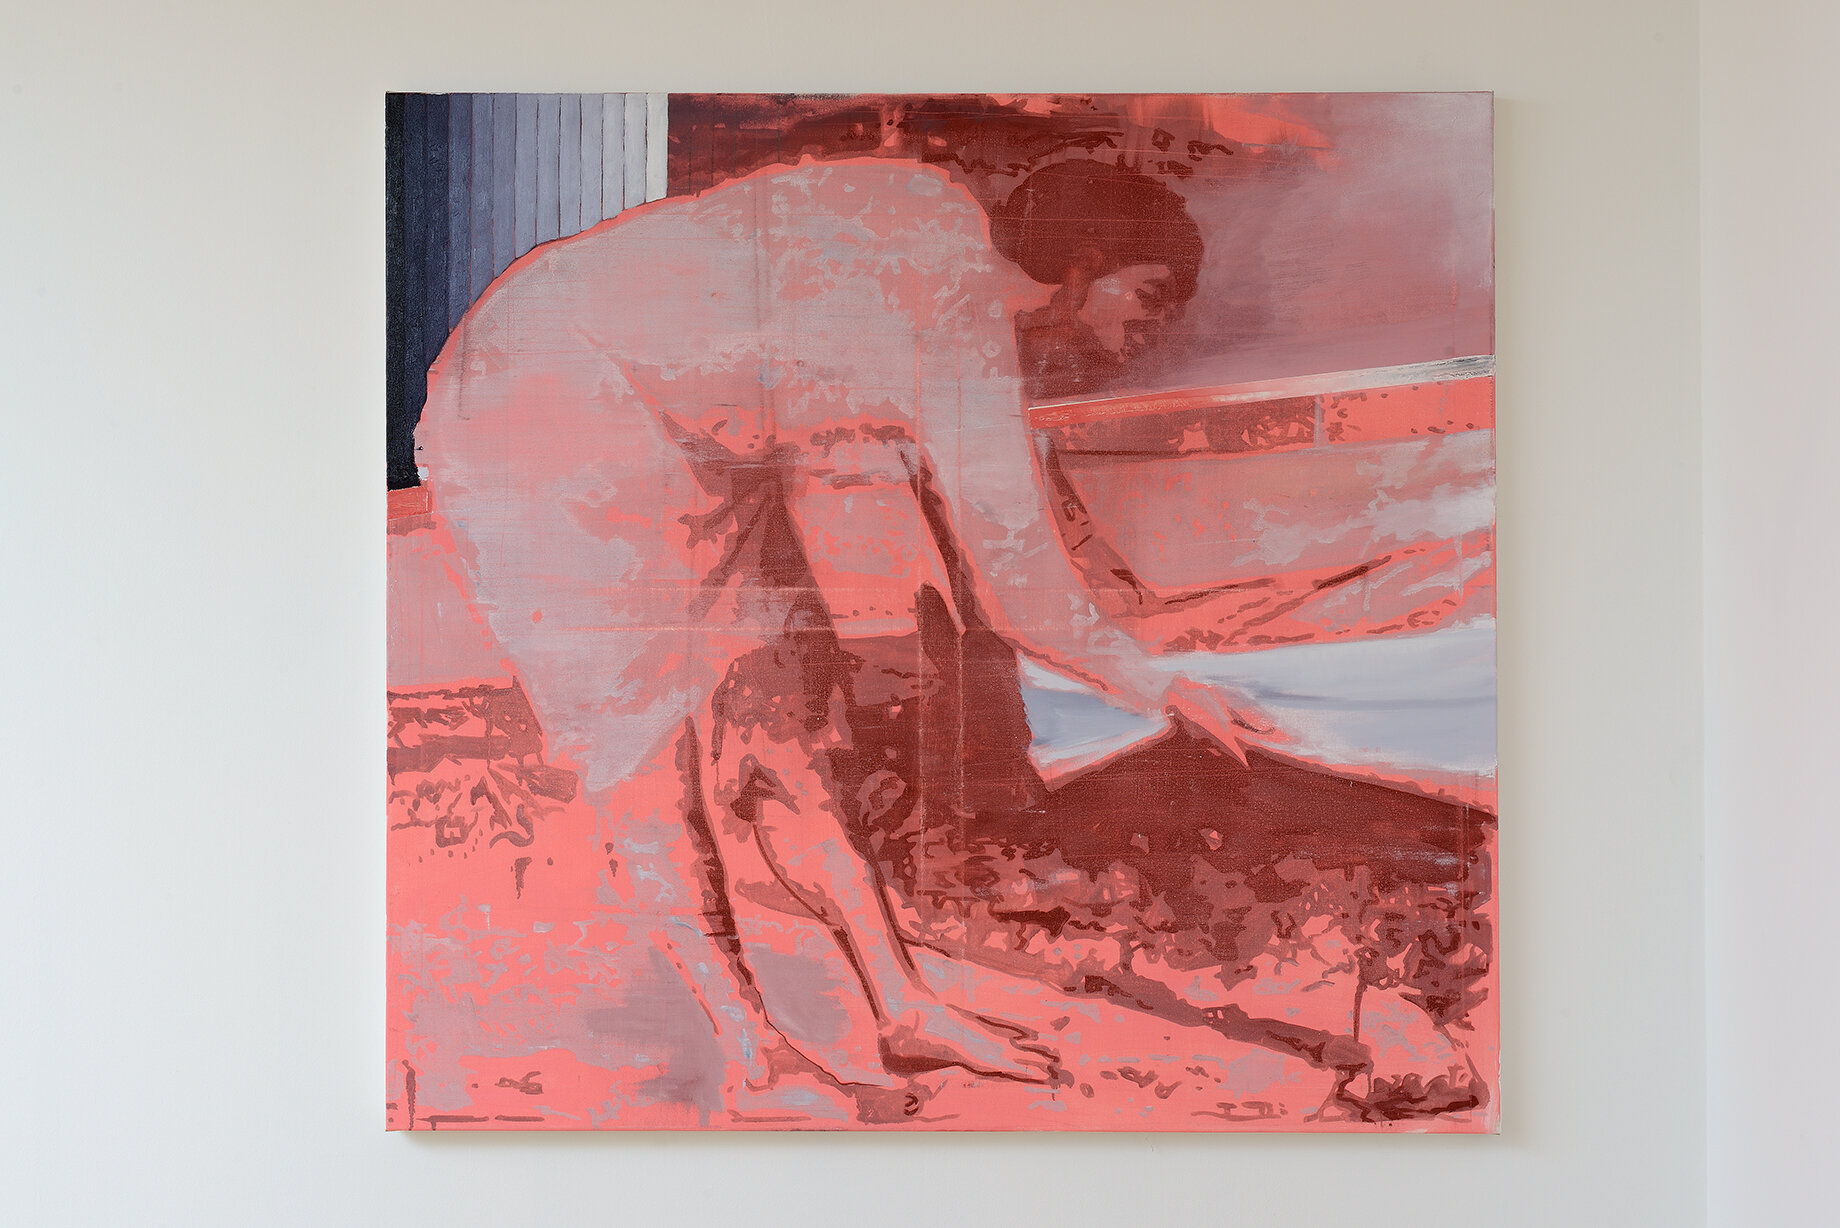   Equalizer I , (2020), oil on canvas, 150x160 cm    